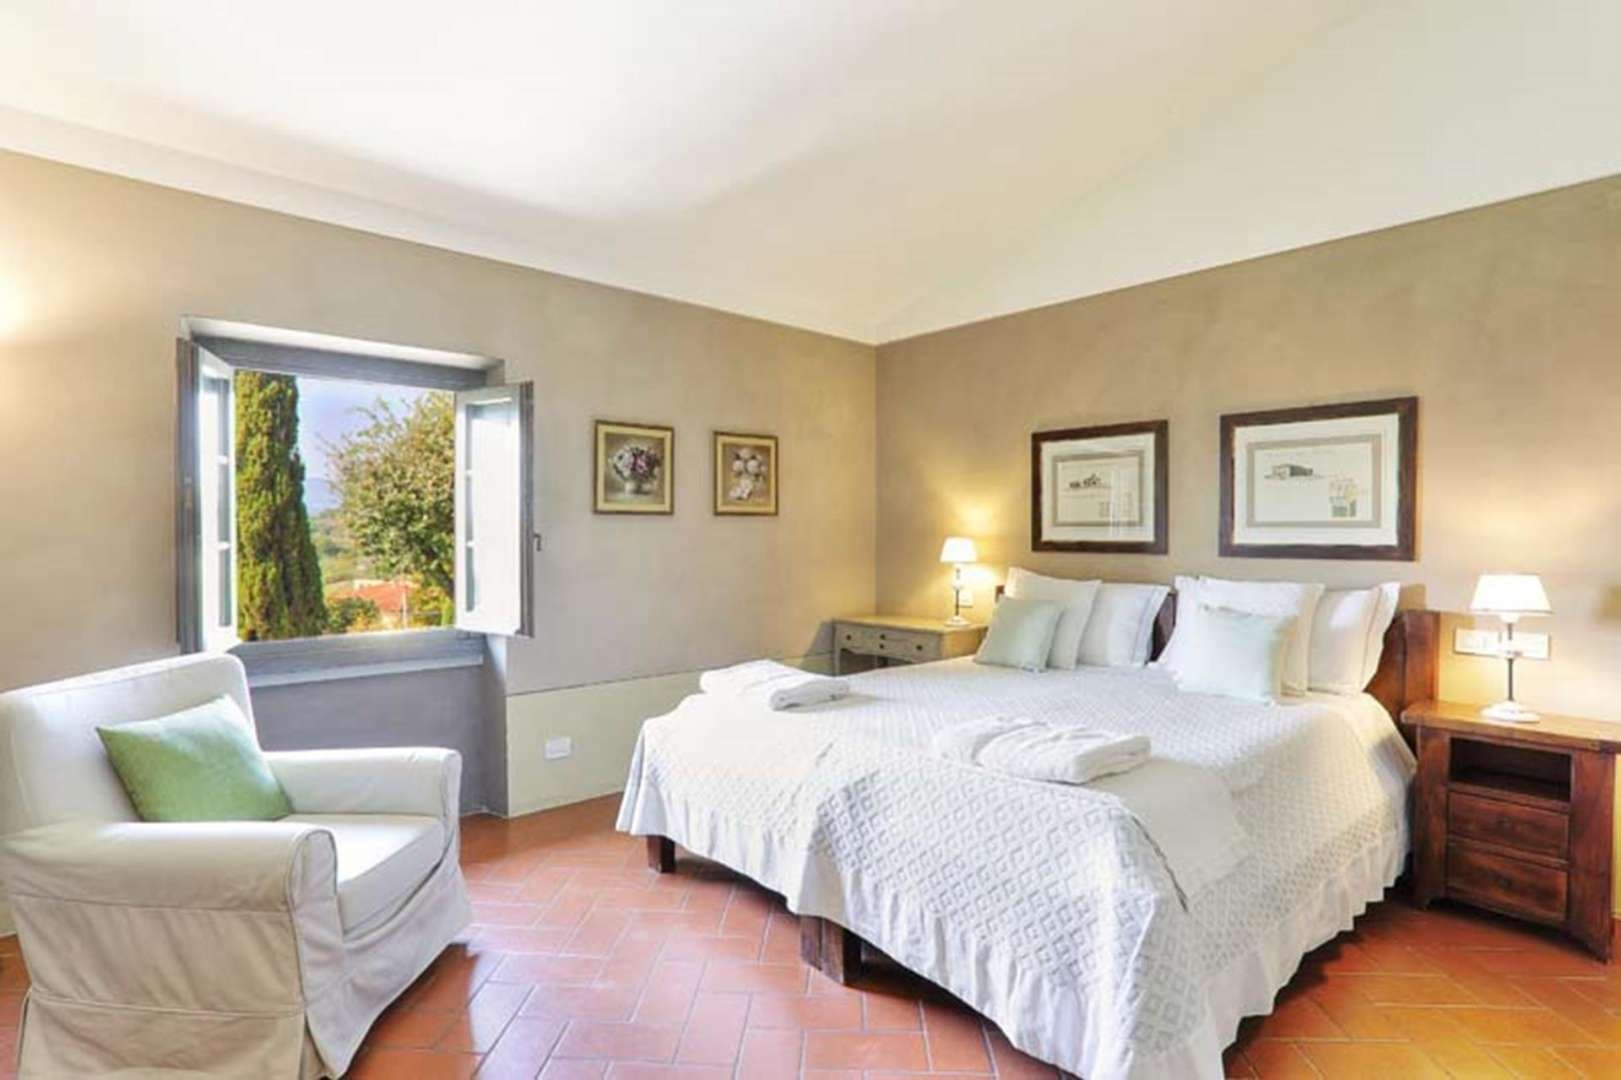 8 Bedroom Villa For Sale Villa Donna Elena Lp05001 2e0e26887c1f5400.jpg